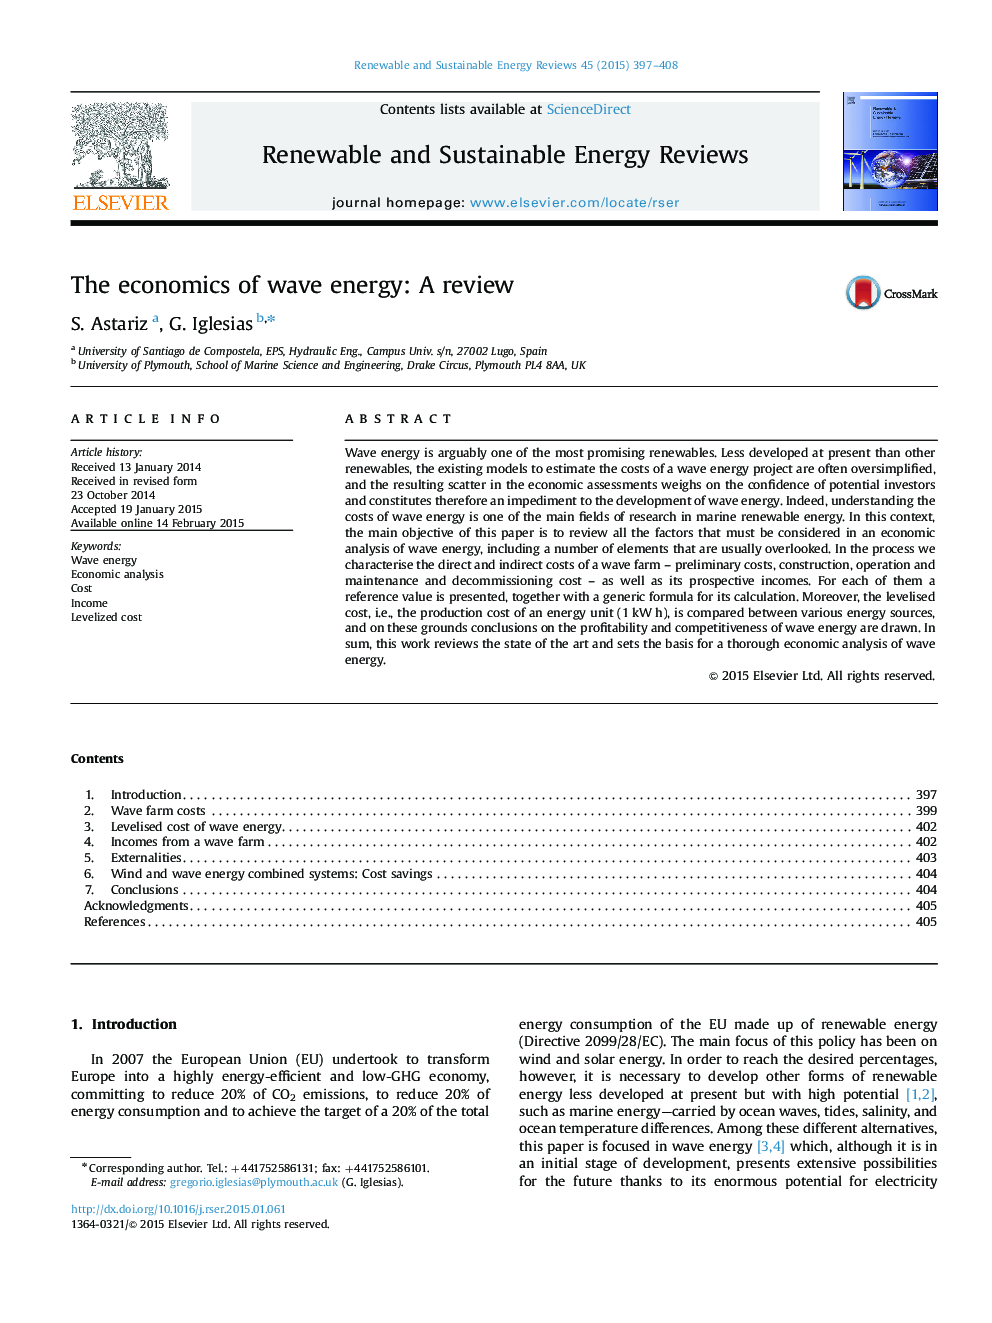 اقتصاد انرژی موج: یک بررسی 